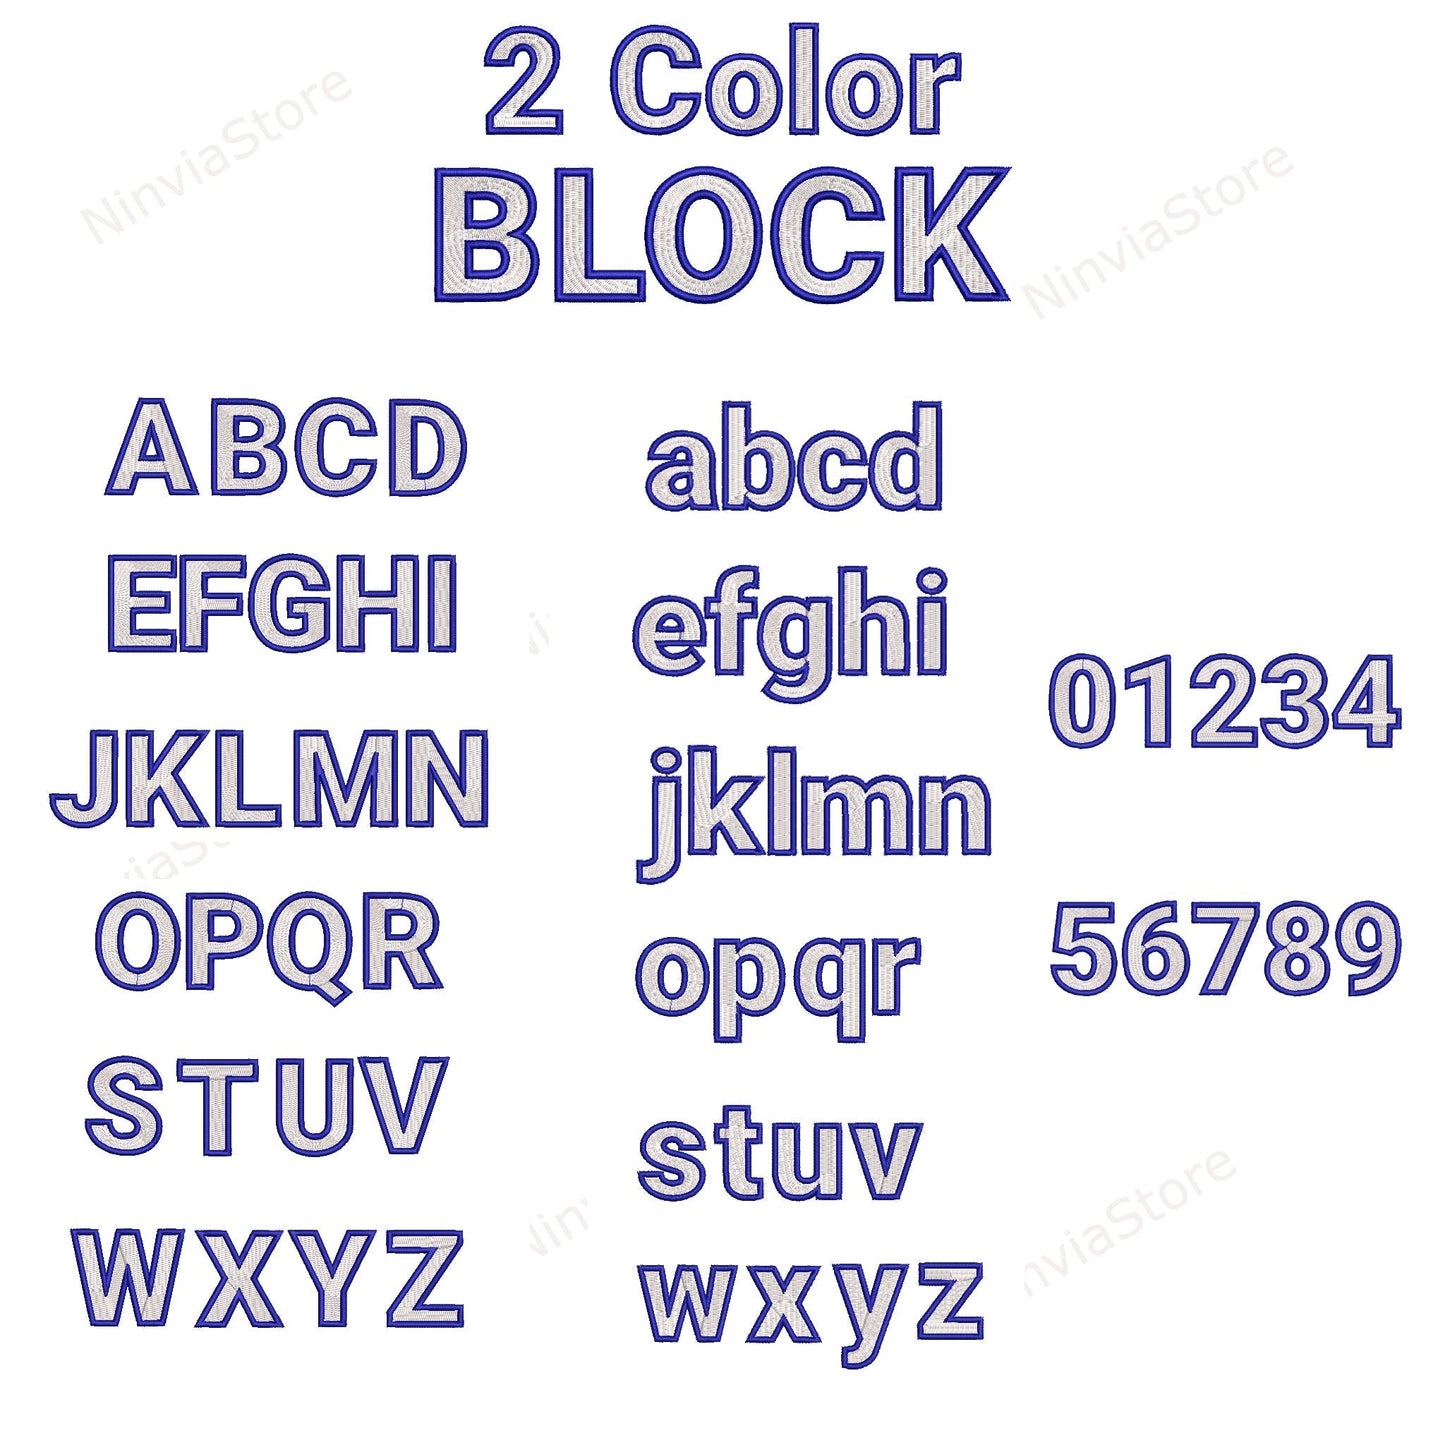 15 XXX Block Embroidery Fonts Bundle, Alphabet Embroidery Design, Block Machine Embroidery Font XXX, Monogram Font